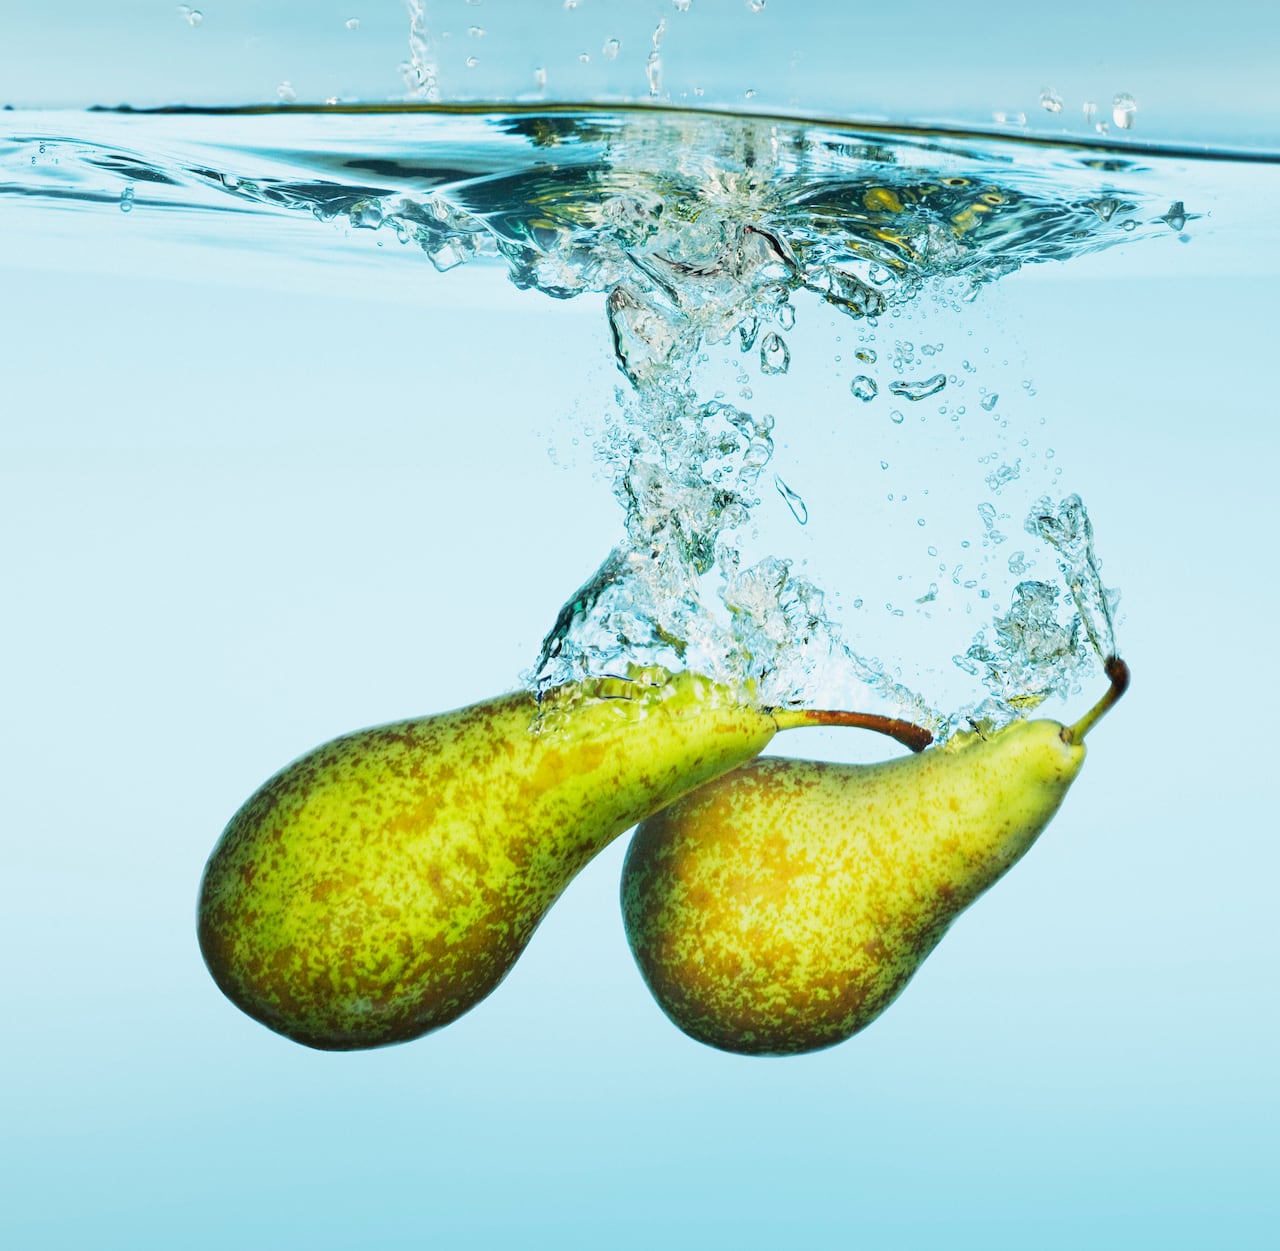 Encuentre la respuesta a cómo utilizar el agua de pera para combatir el colesterol alto y controlar los niveles de azúcar en la sangre.